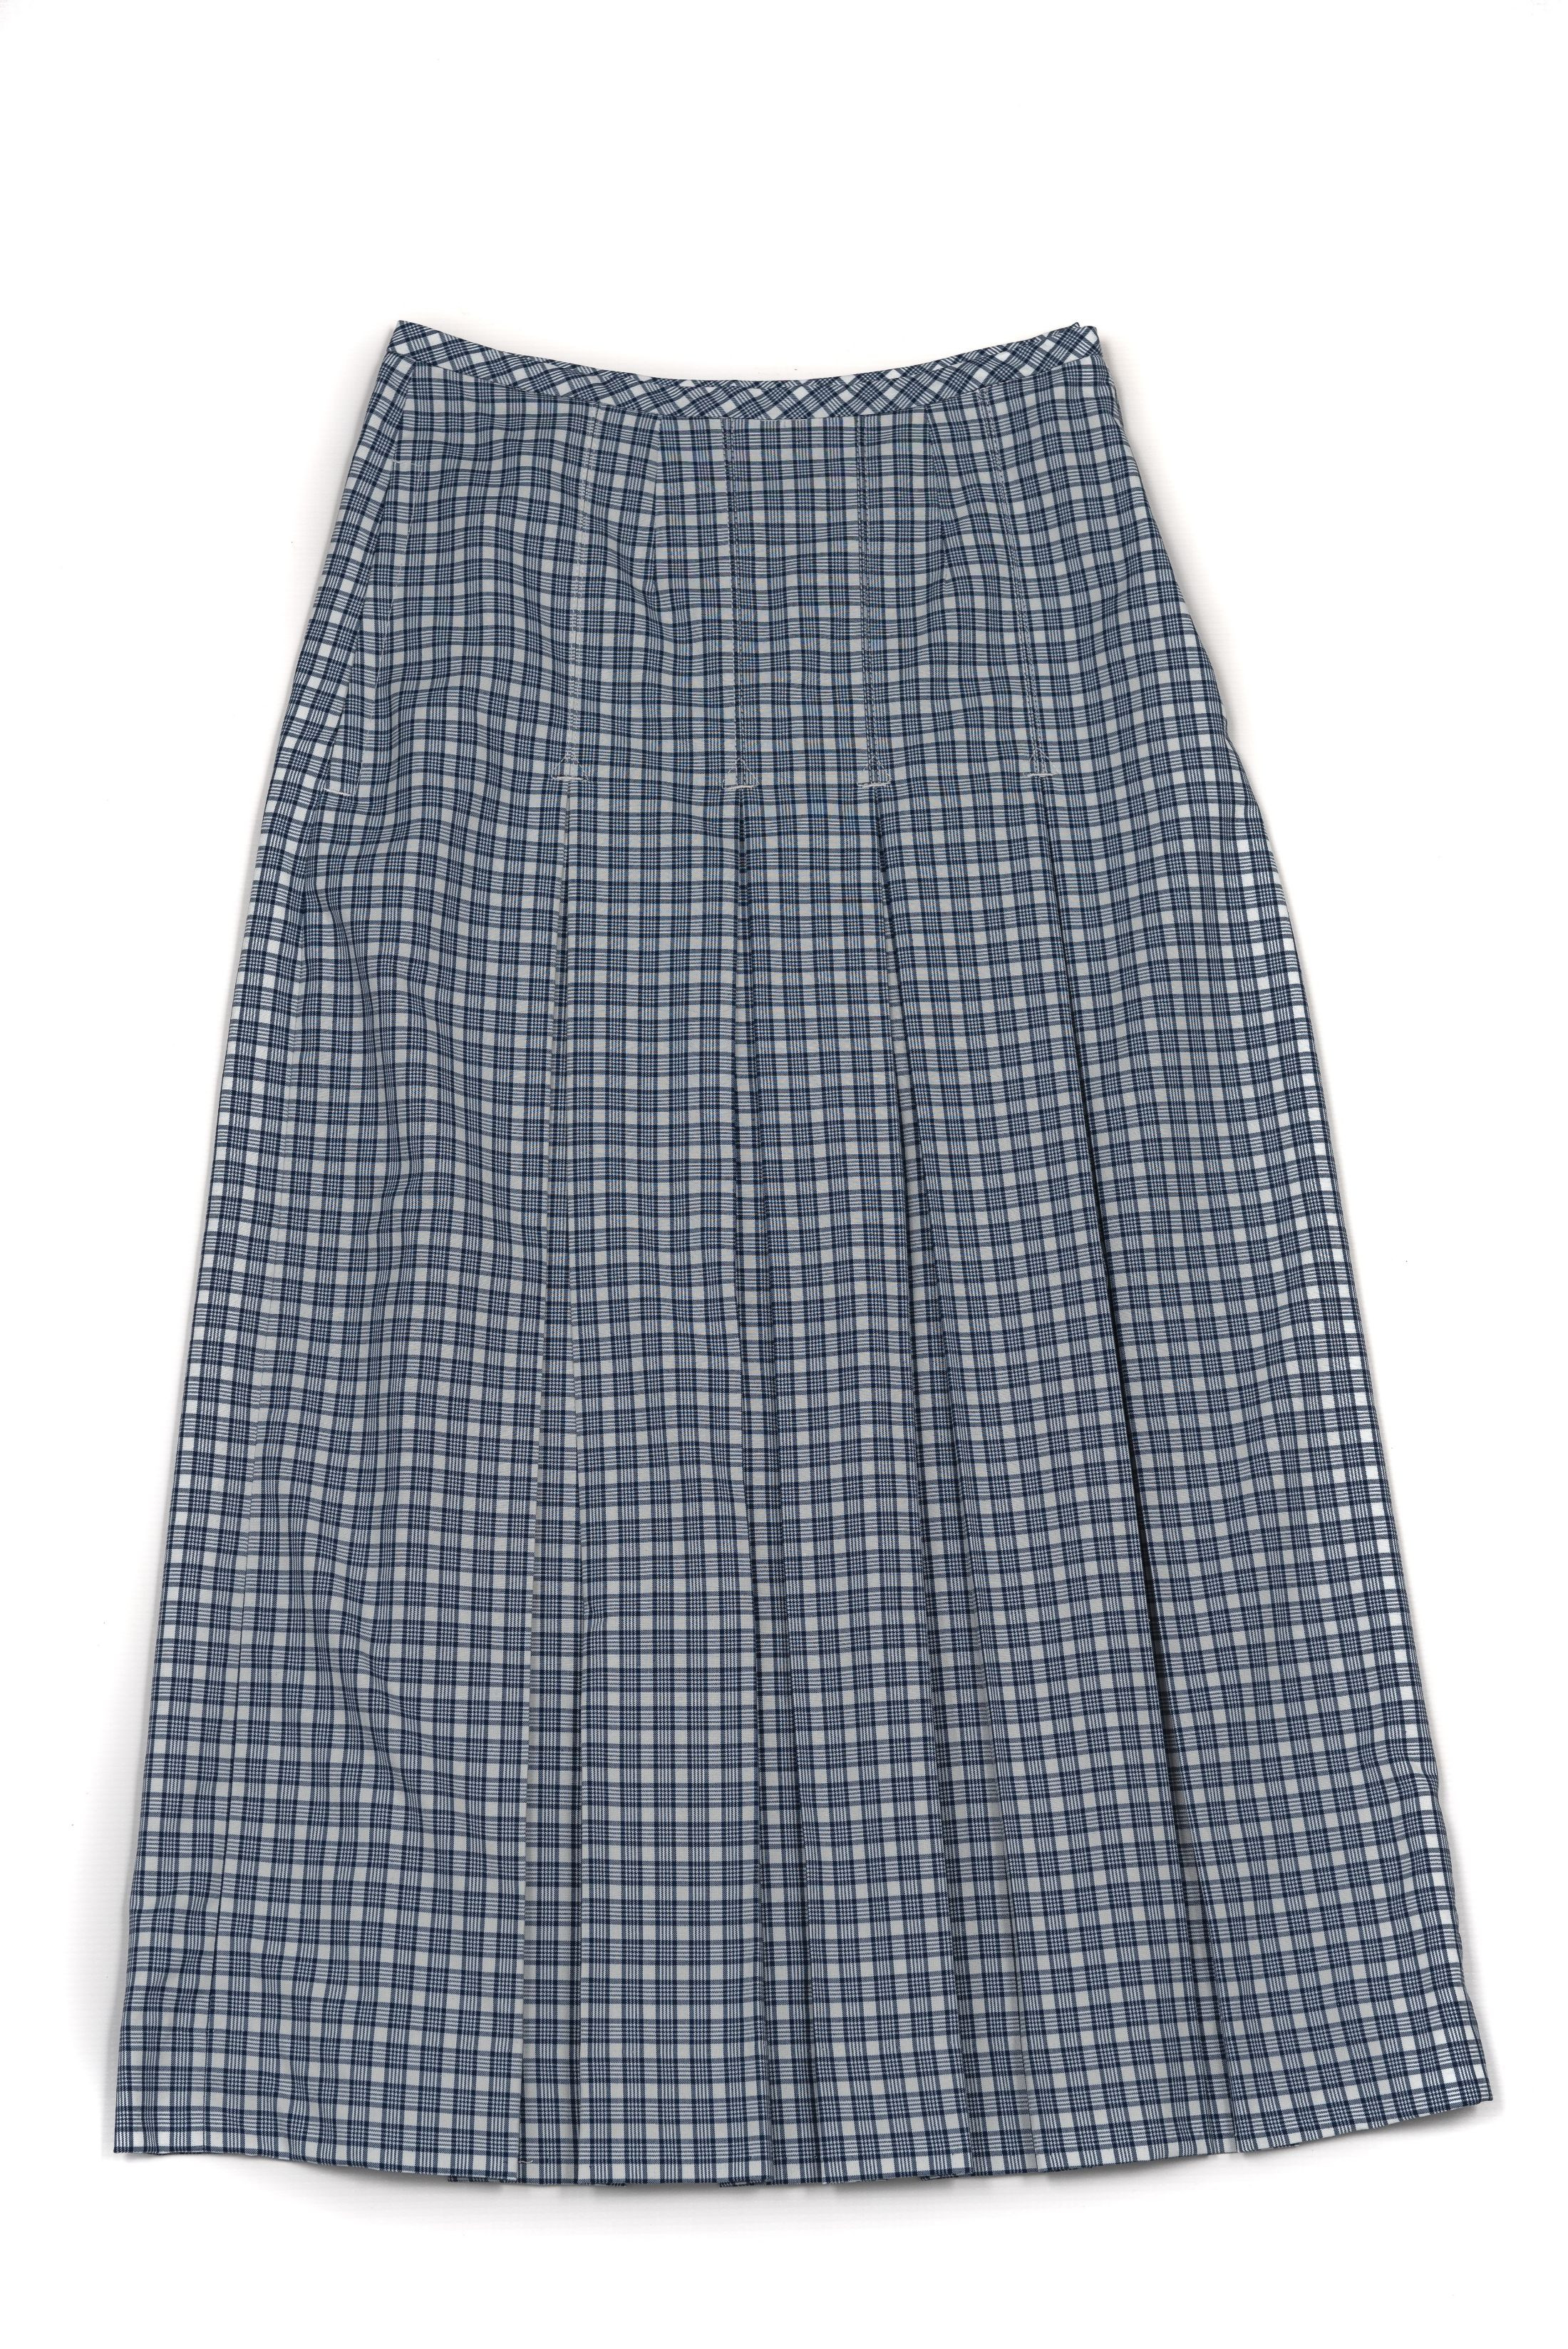 Senior Summer Skirt